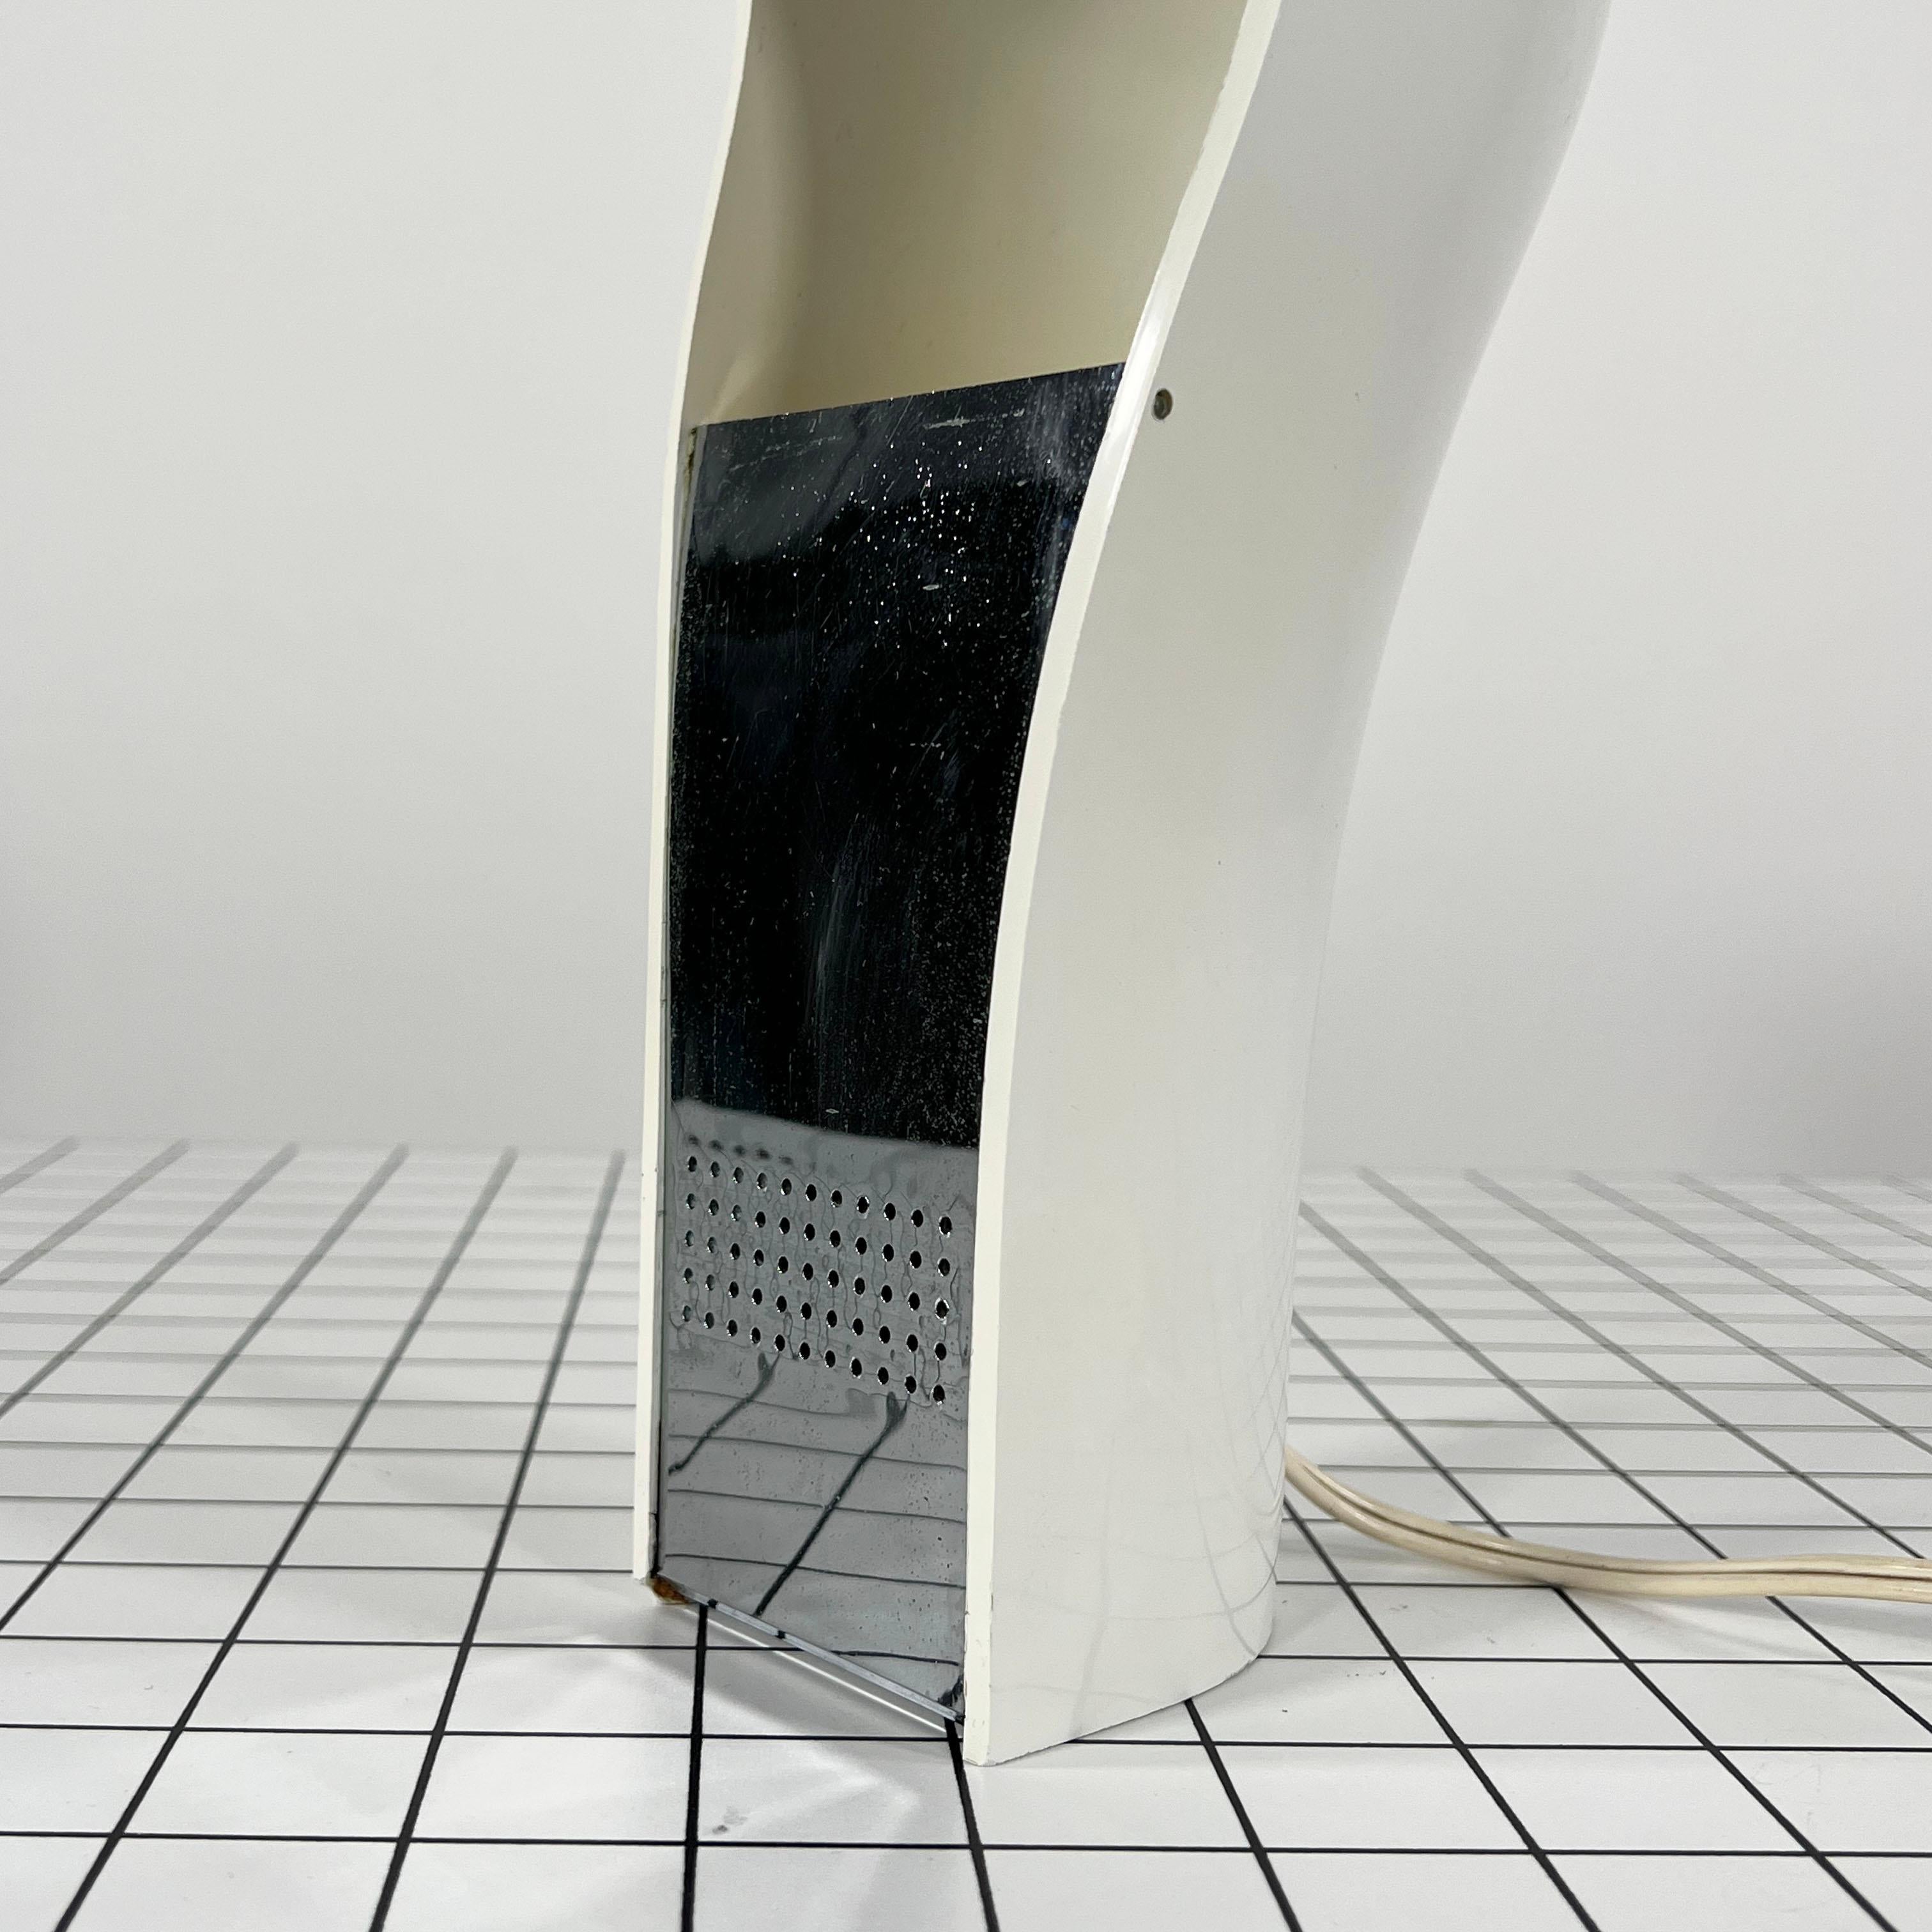 White 'Pelota' Desk Lamp by Cesare Casati for Lamperti Studio D.A., Italy, 1970s For Sale 5